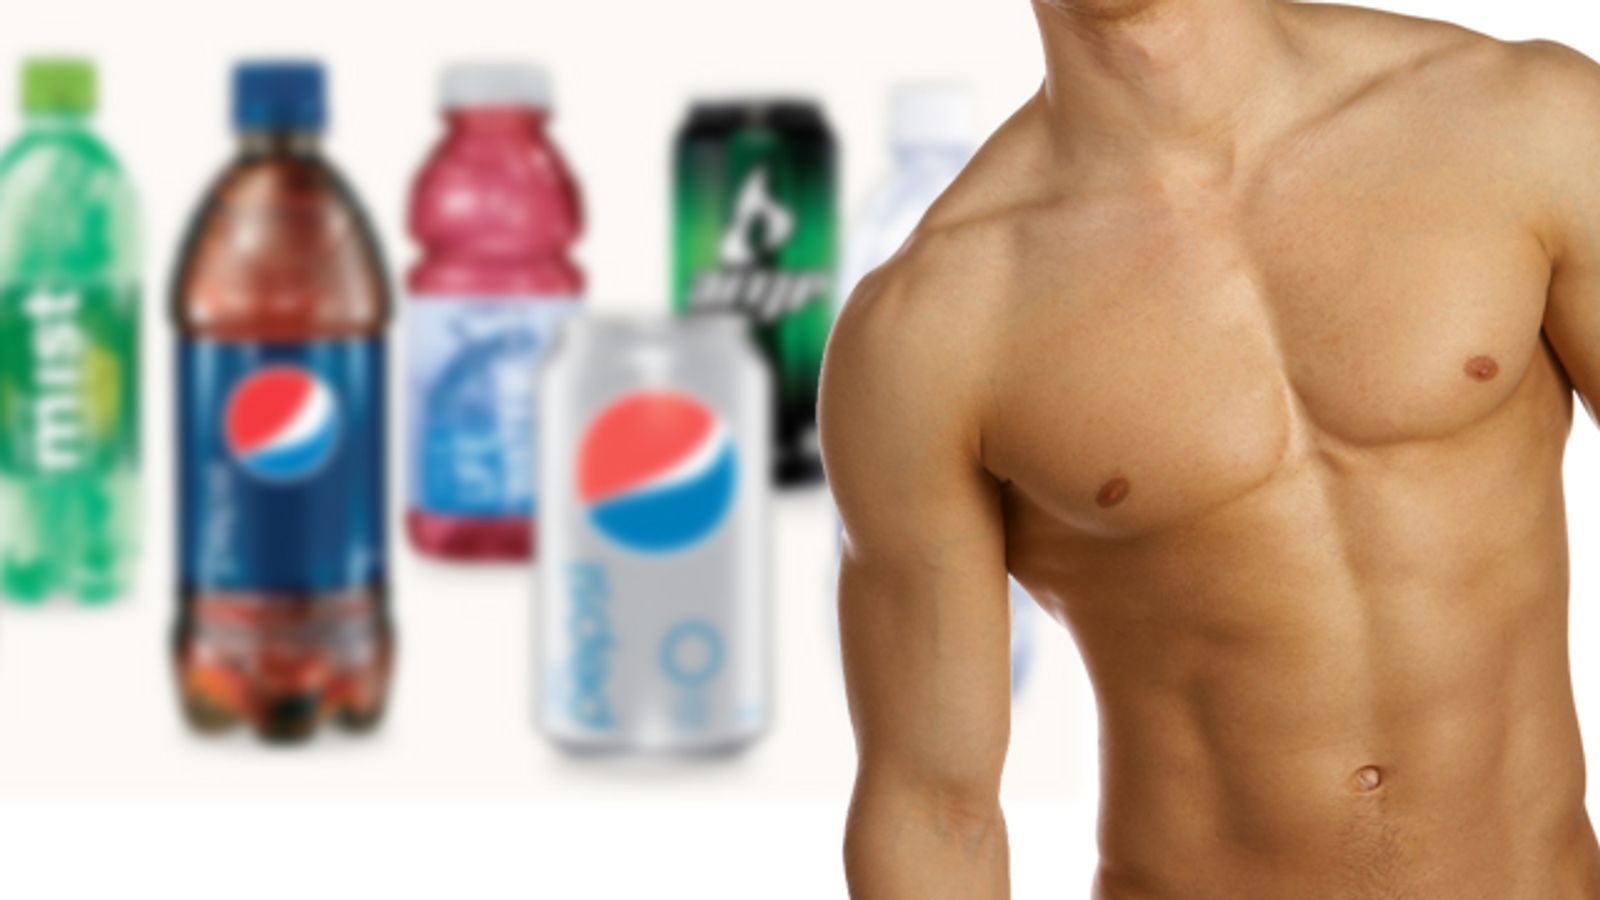 AFA Urges Boycott of 'Gay-Loving' PepsiCo, Campbell's